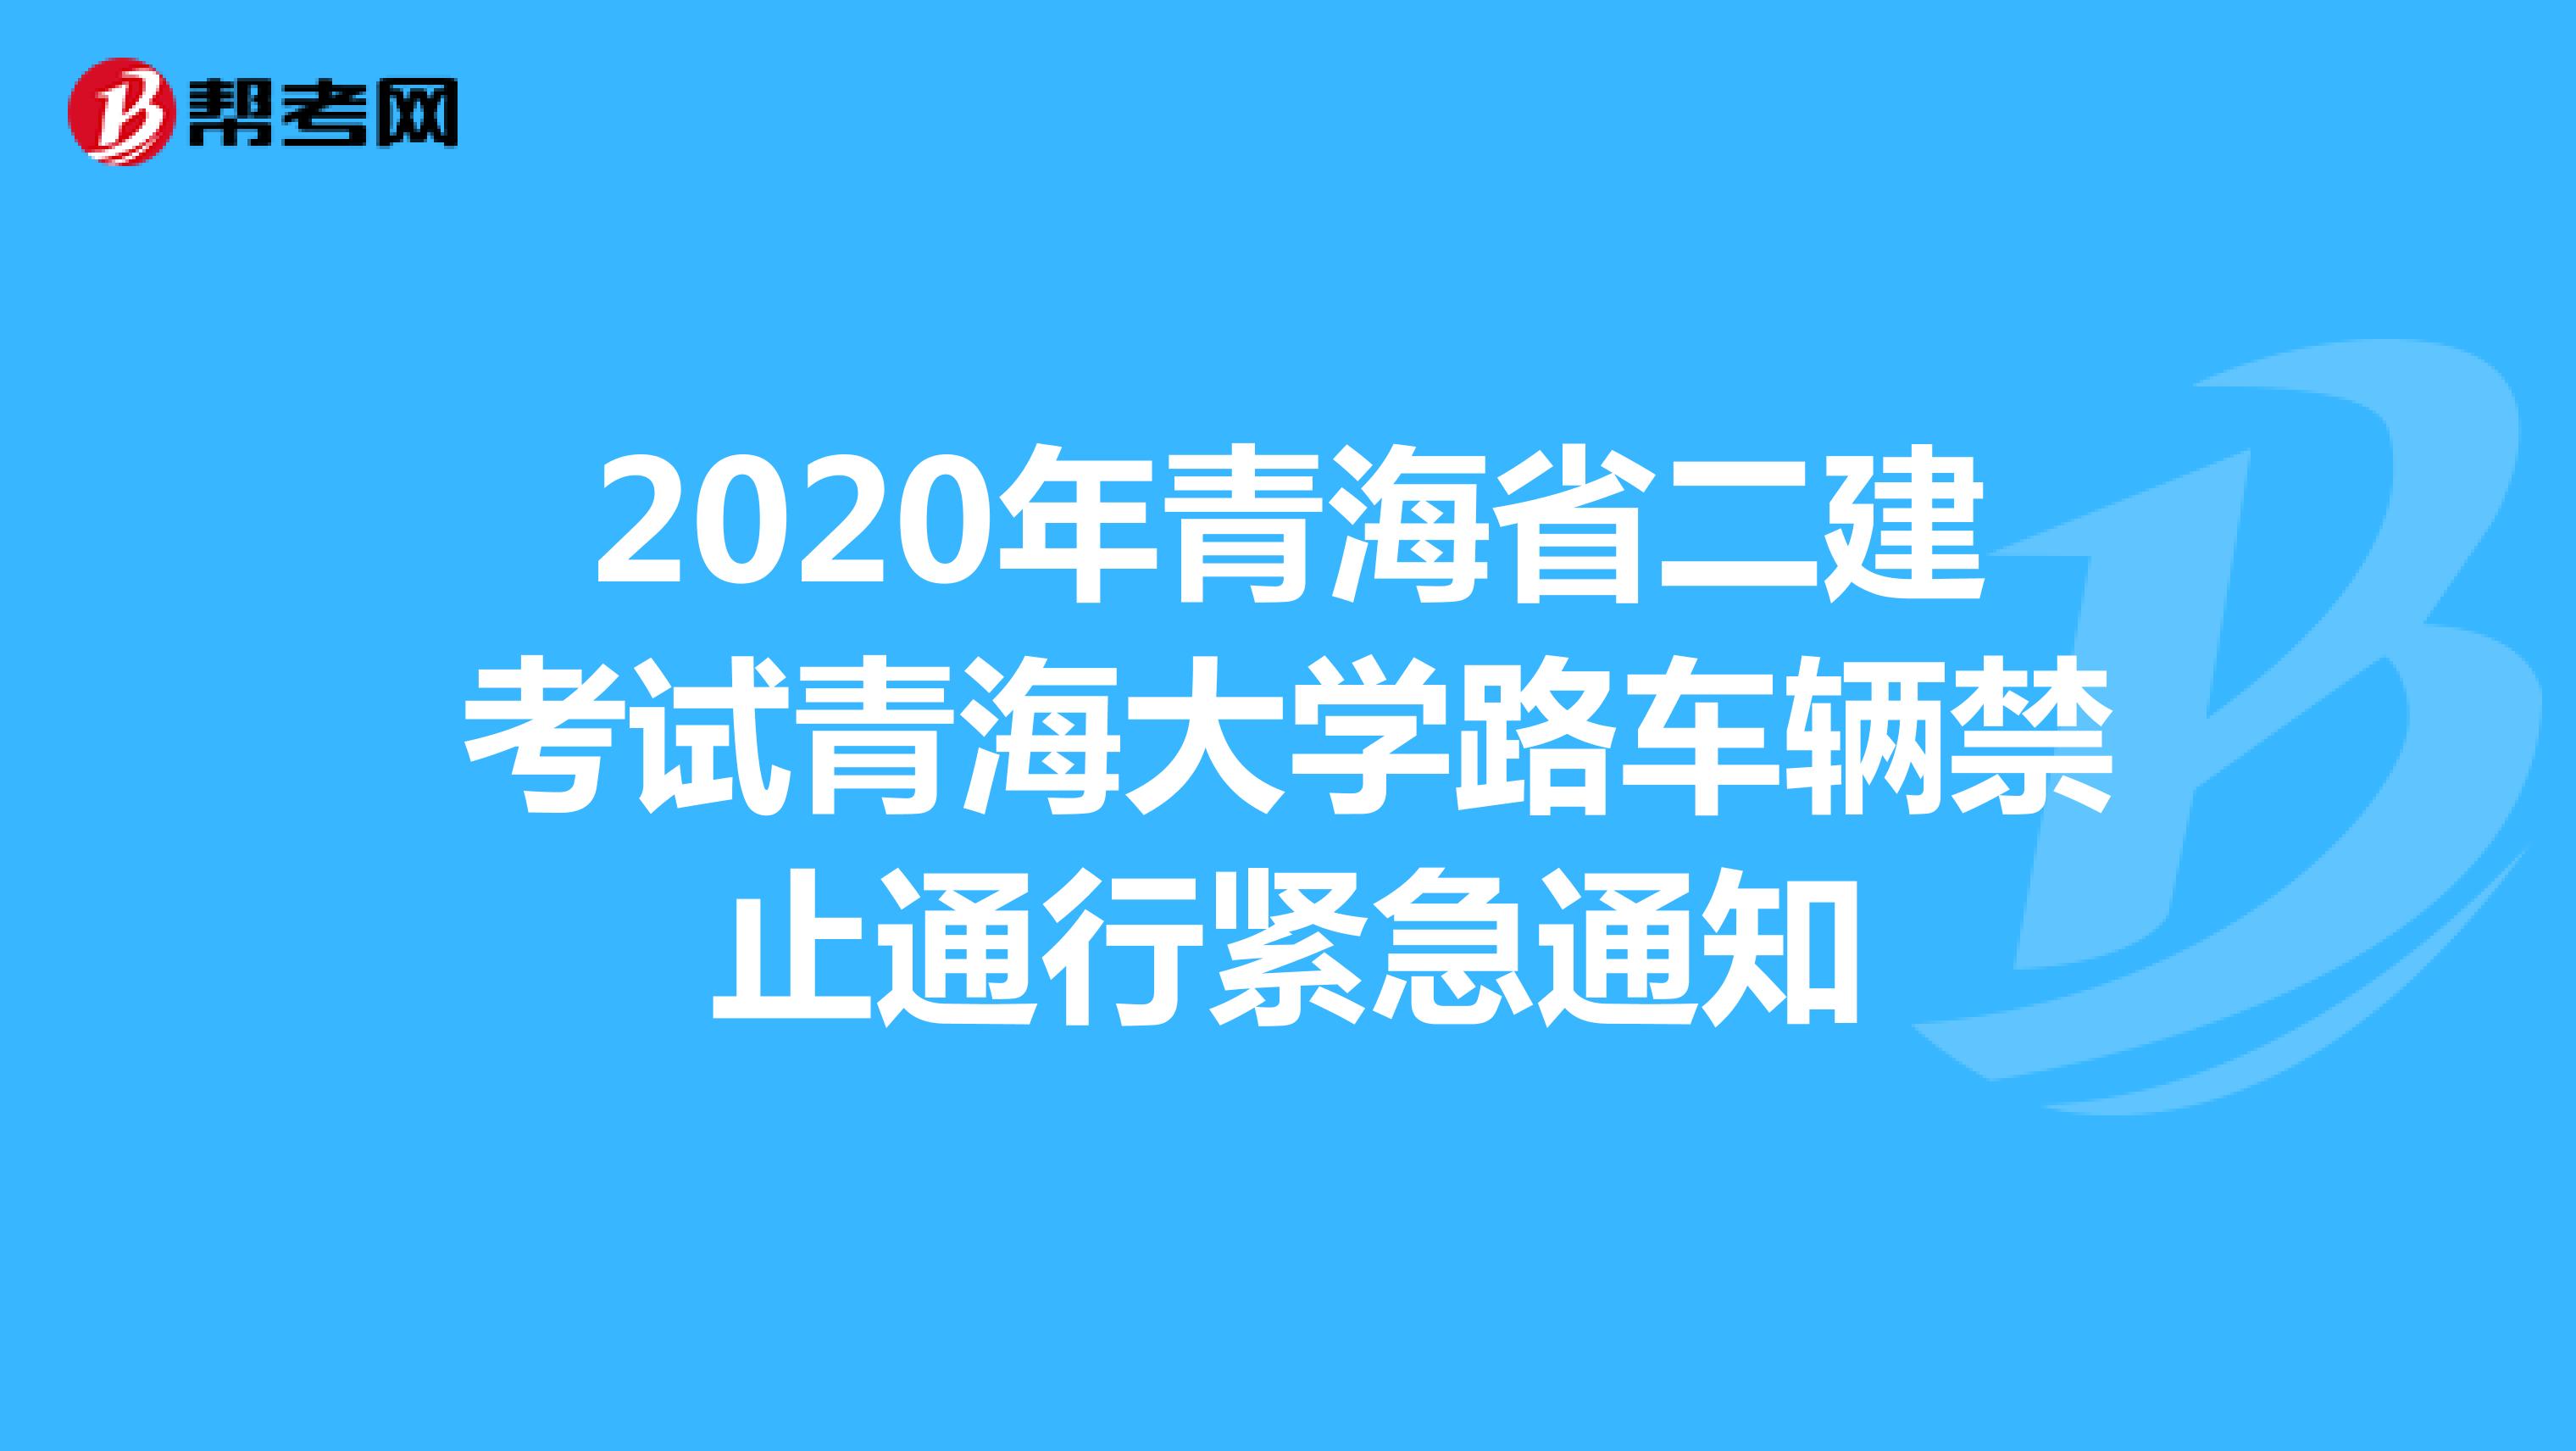 2020年青海省二建考试青海大学路车辆禁止通行紧急通知